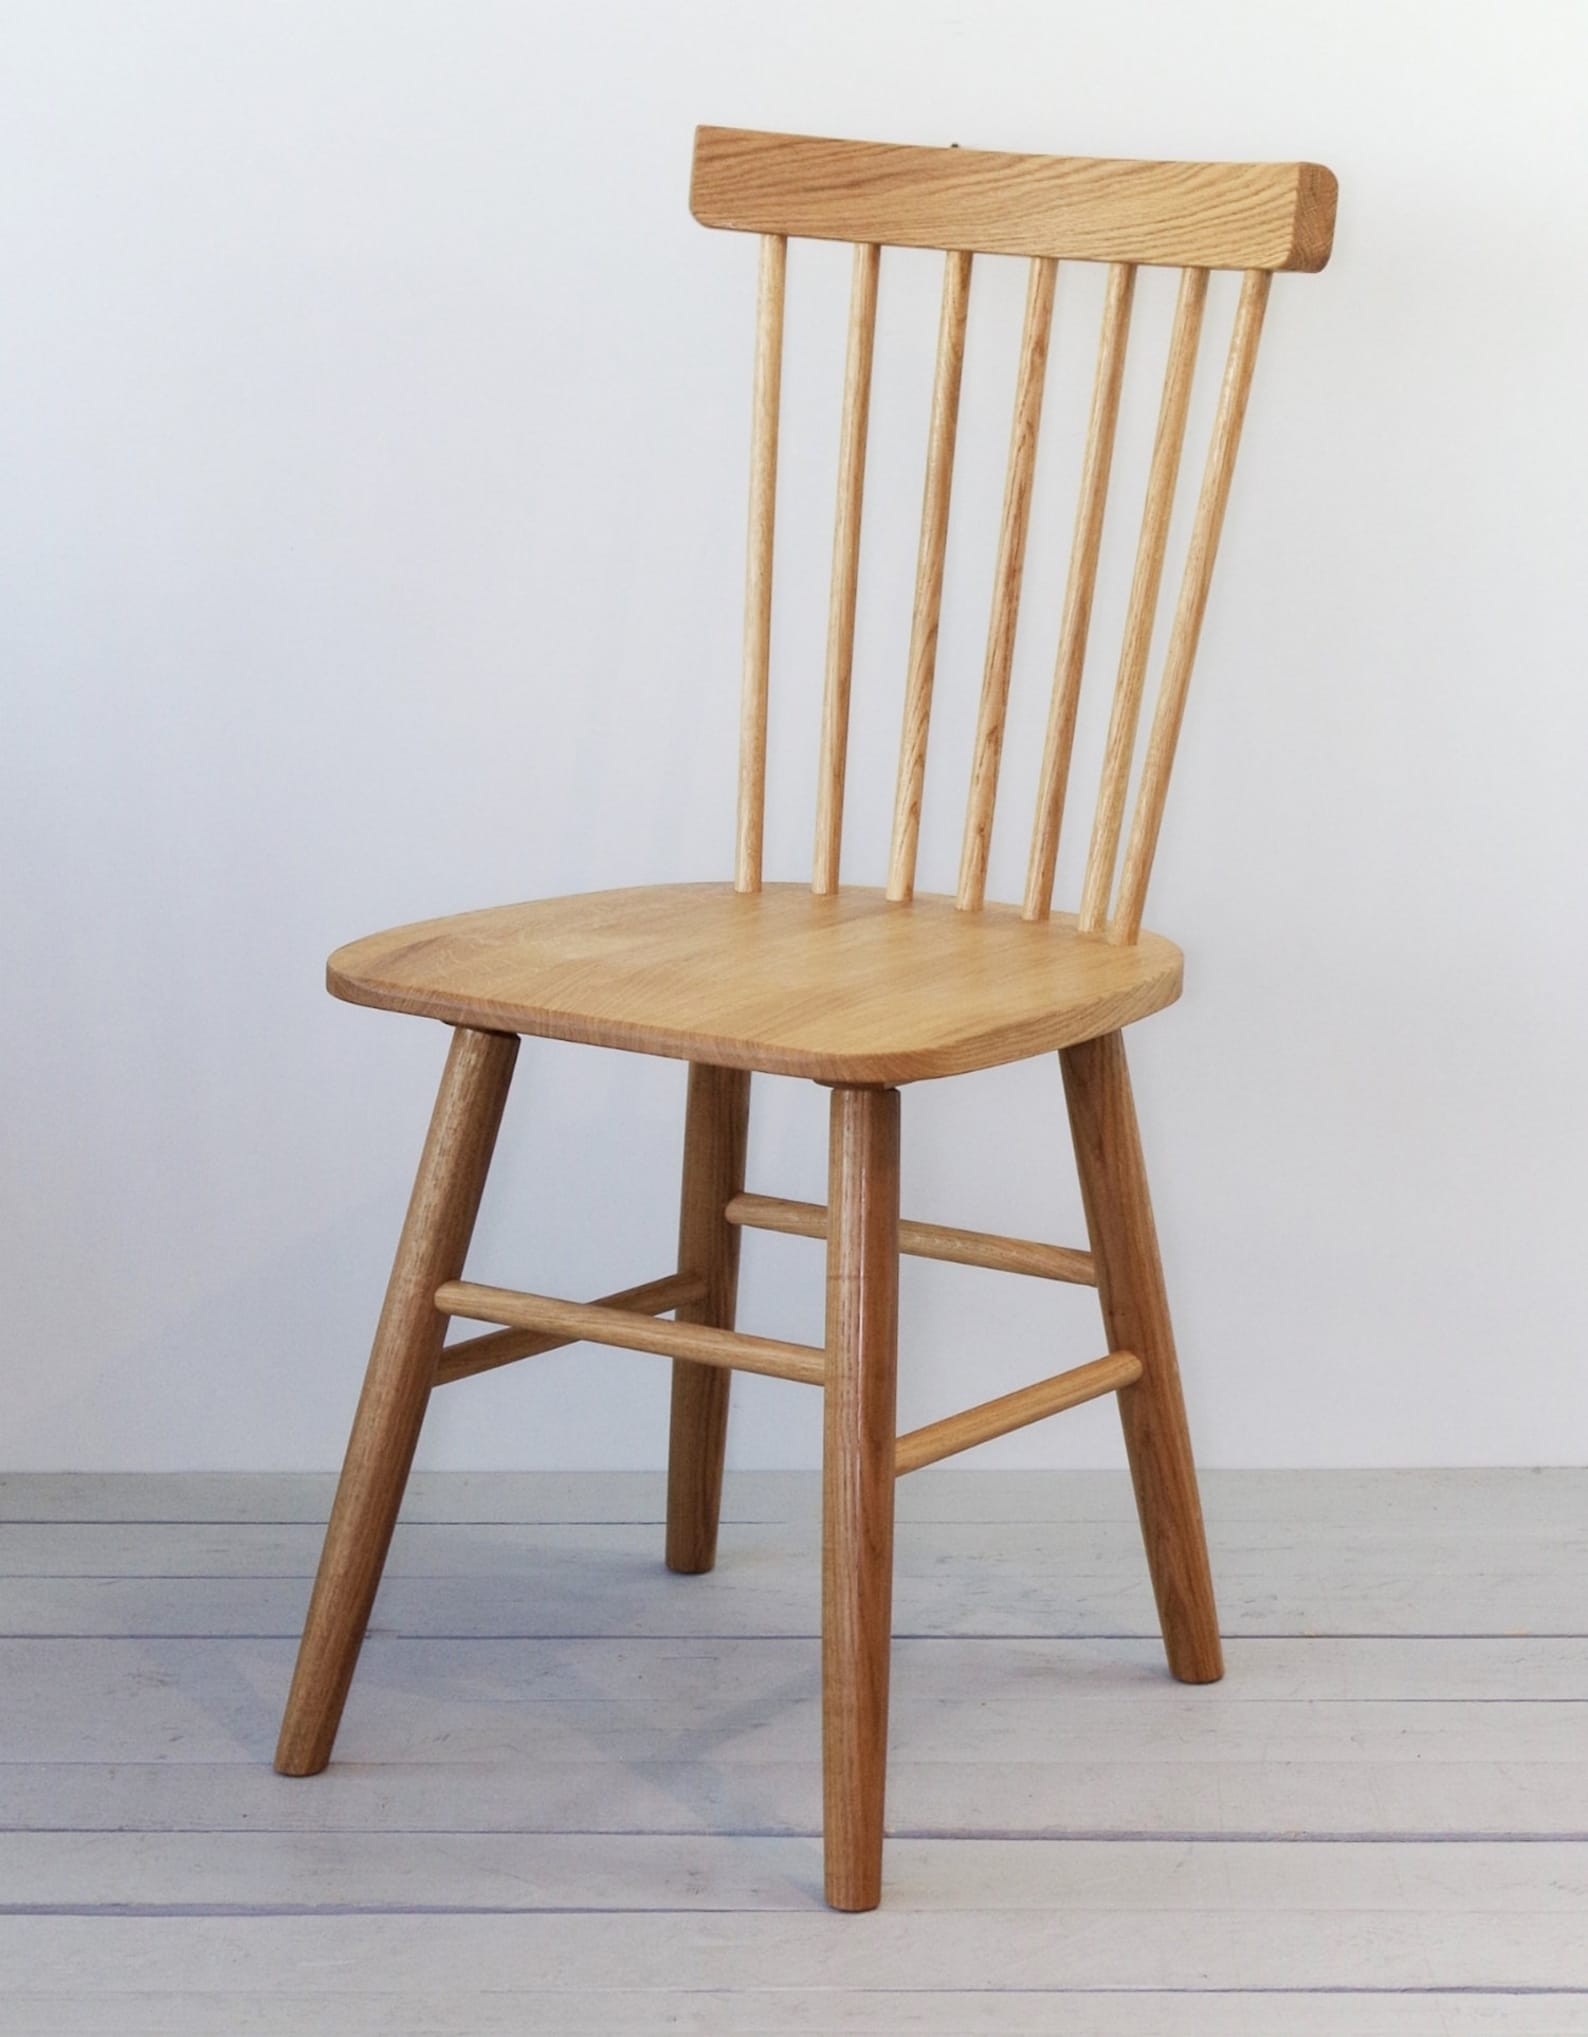 Wooden chair. Стул деревянный. Стул дерево. Обычный деревянный стул. Простые деревянные стулья для кухни.